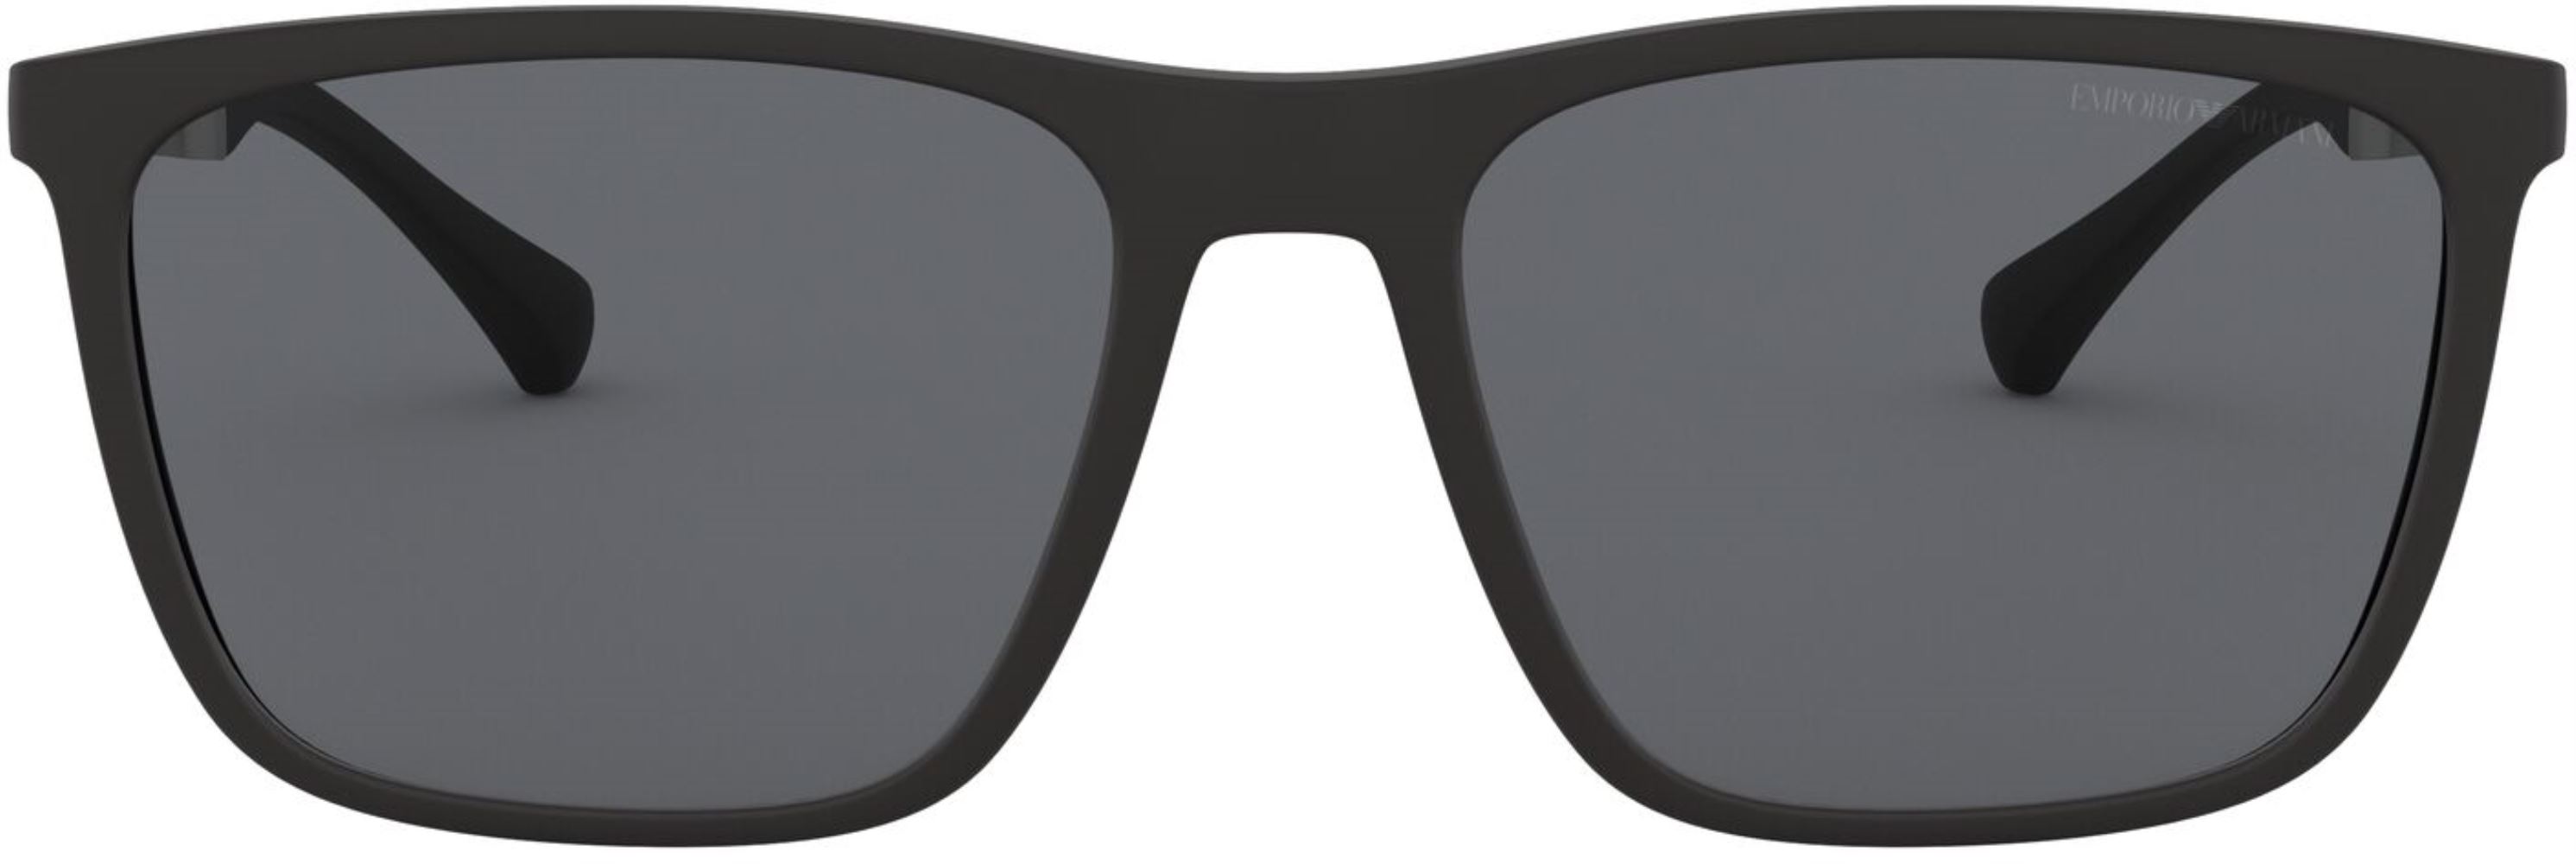 Emporio Armani Men's Sunglasses 0EA4150 506387 59